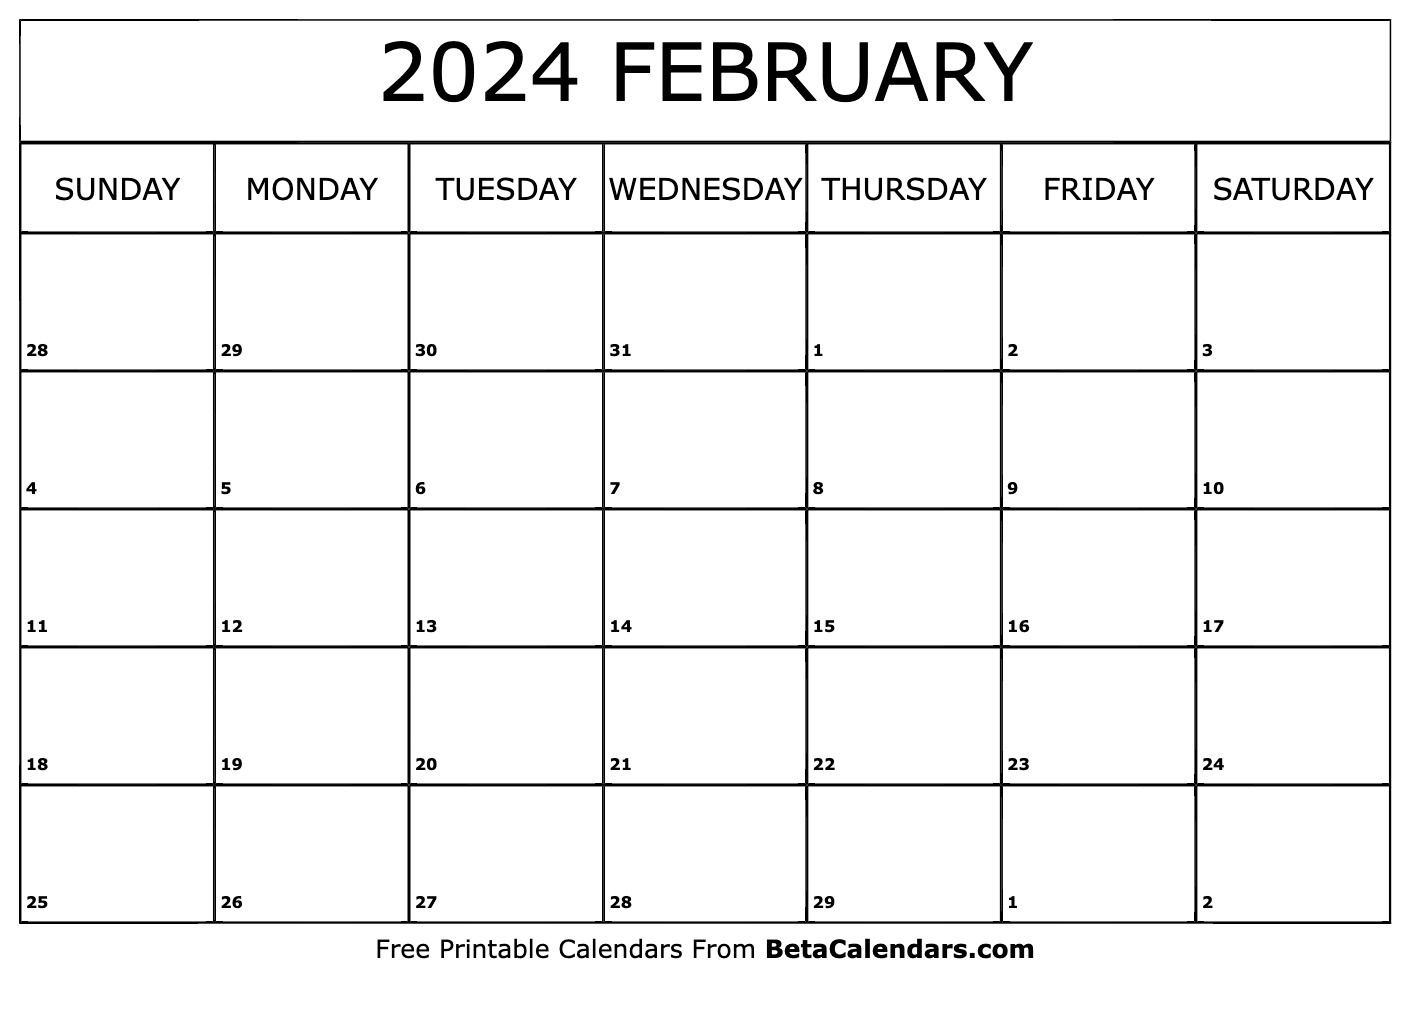 Free Printable February 2024 Calendar intended for February 2024 Julian Calendar